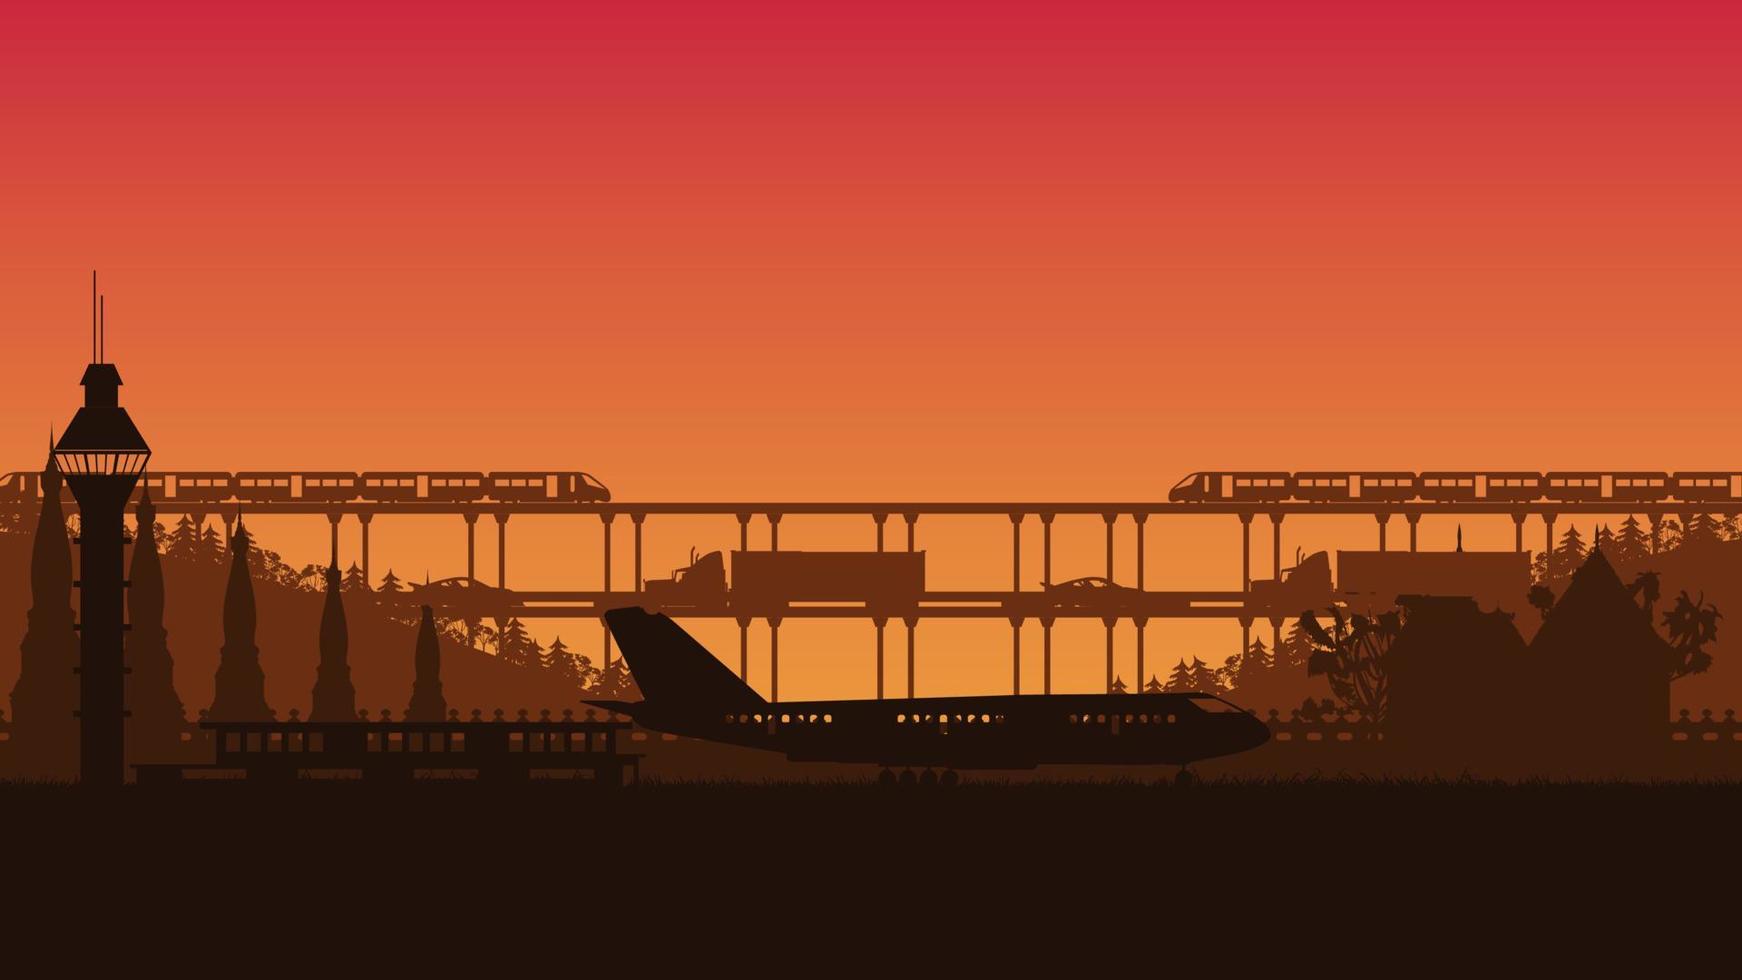 silhouette d'avion, de camion et de train sur fond dégradé orange vecteur